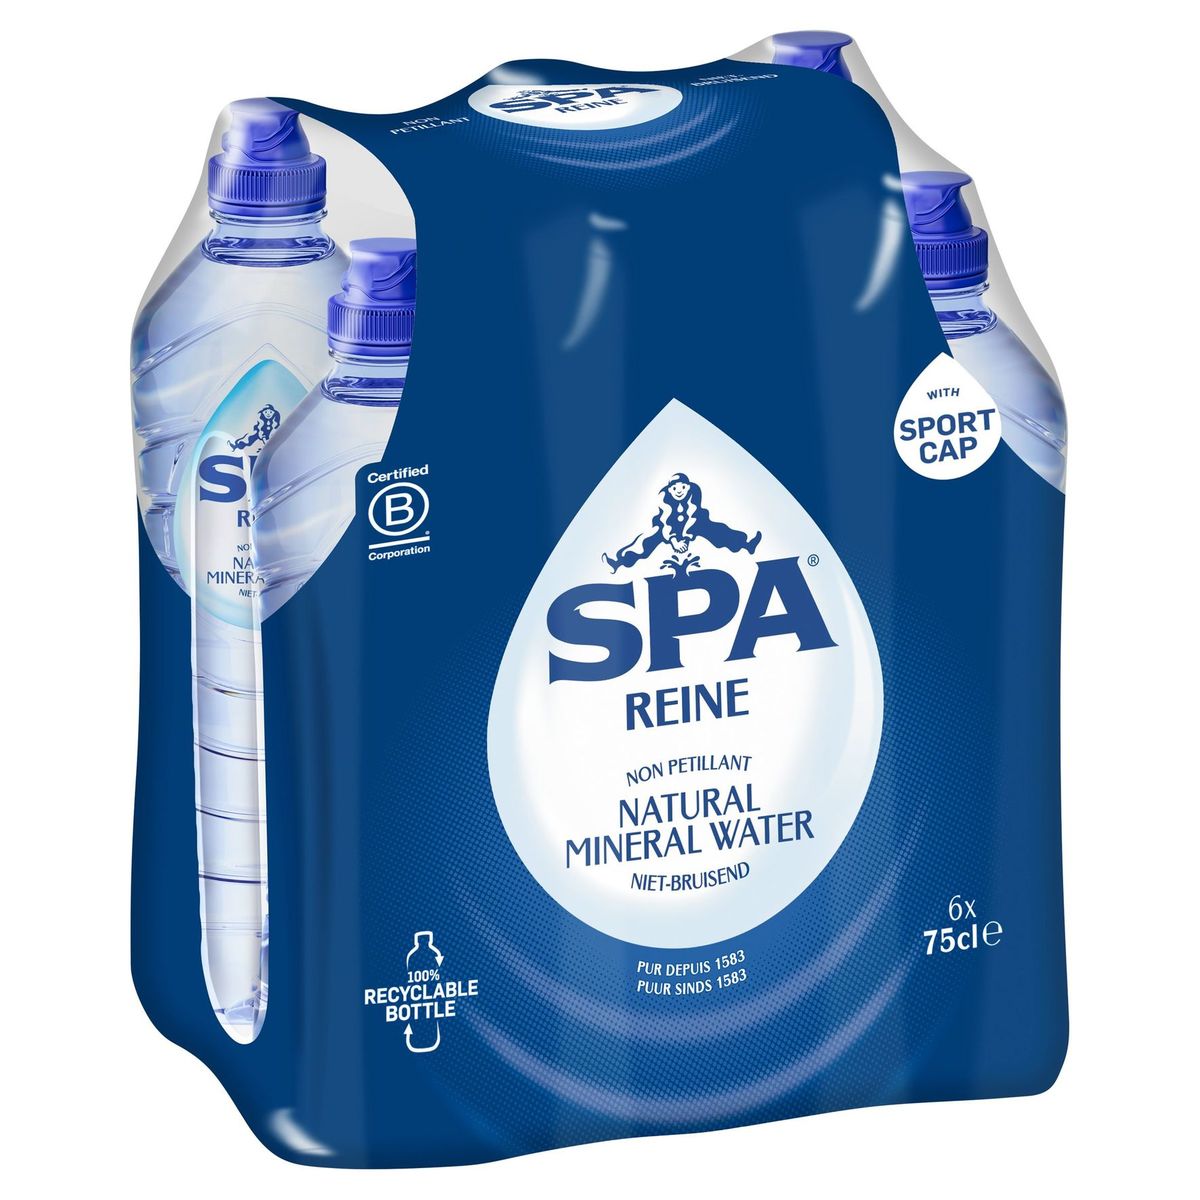 SPA Reine Niet-Bruisend Natural Mineral Water 6 x 75 cl